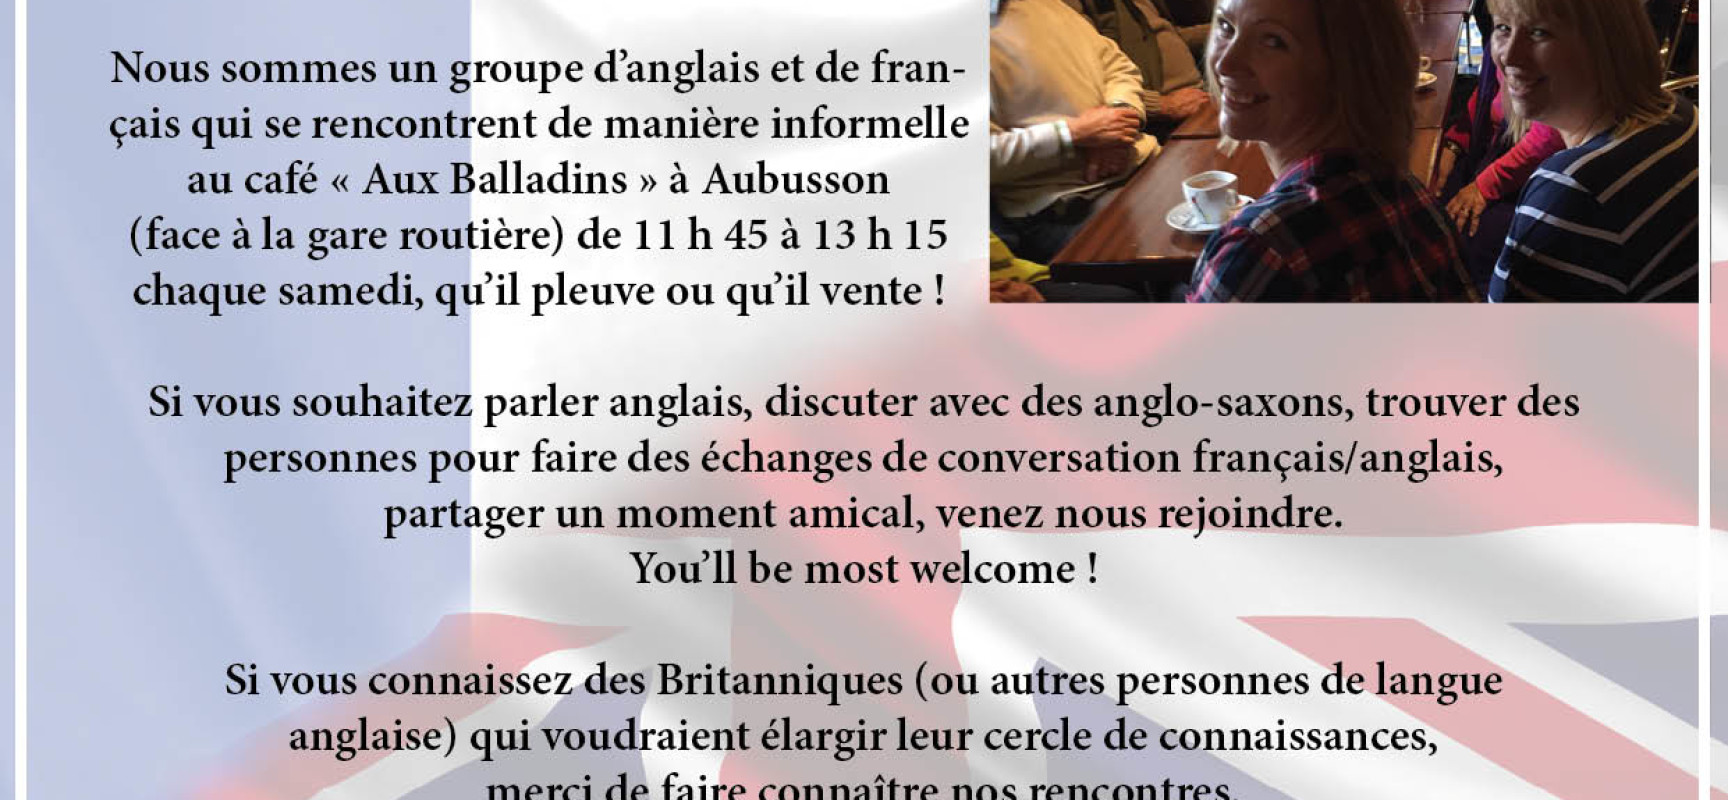 Aubusson’s network,  les rencontres franco-britanniques